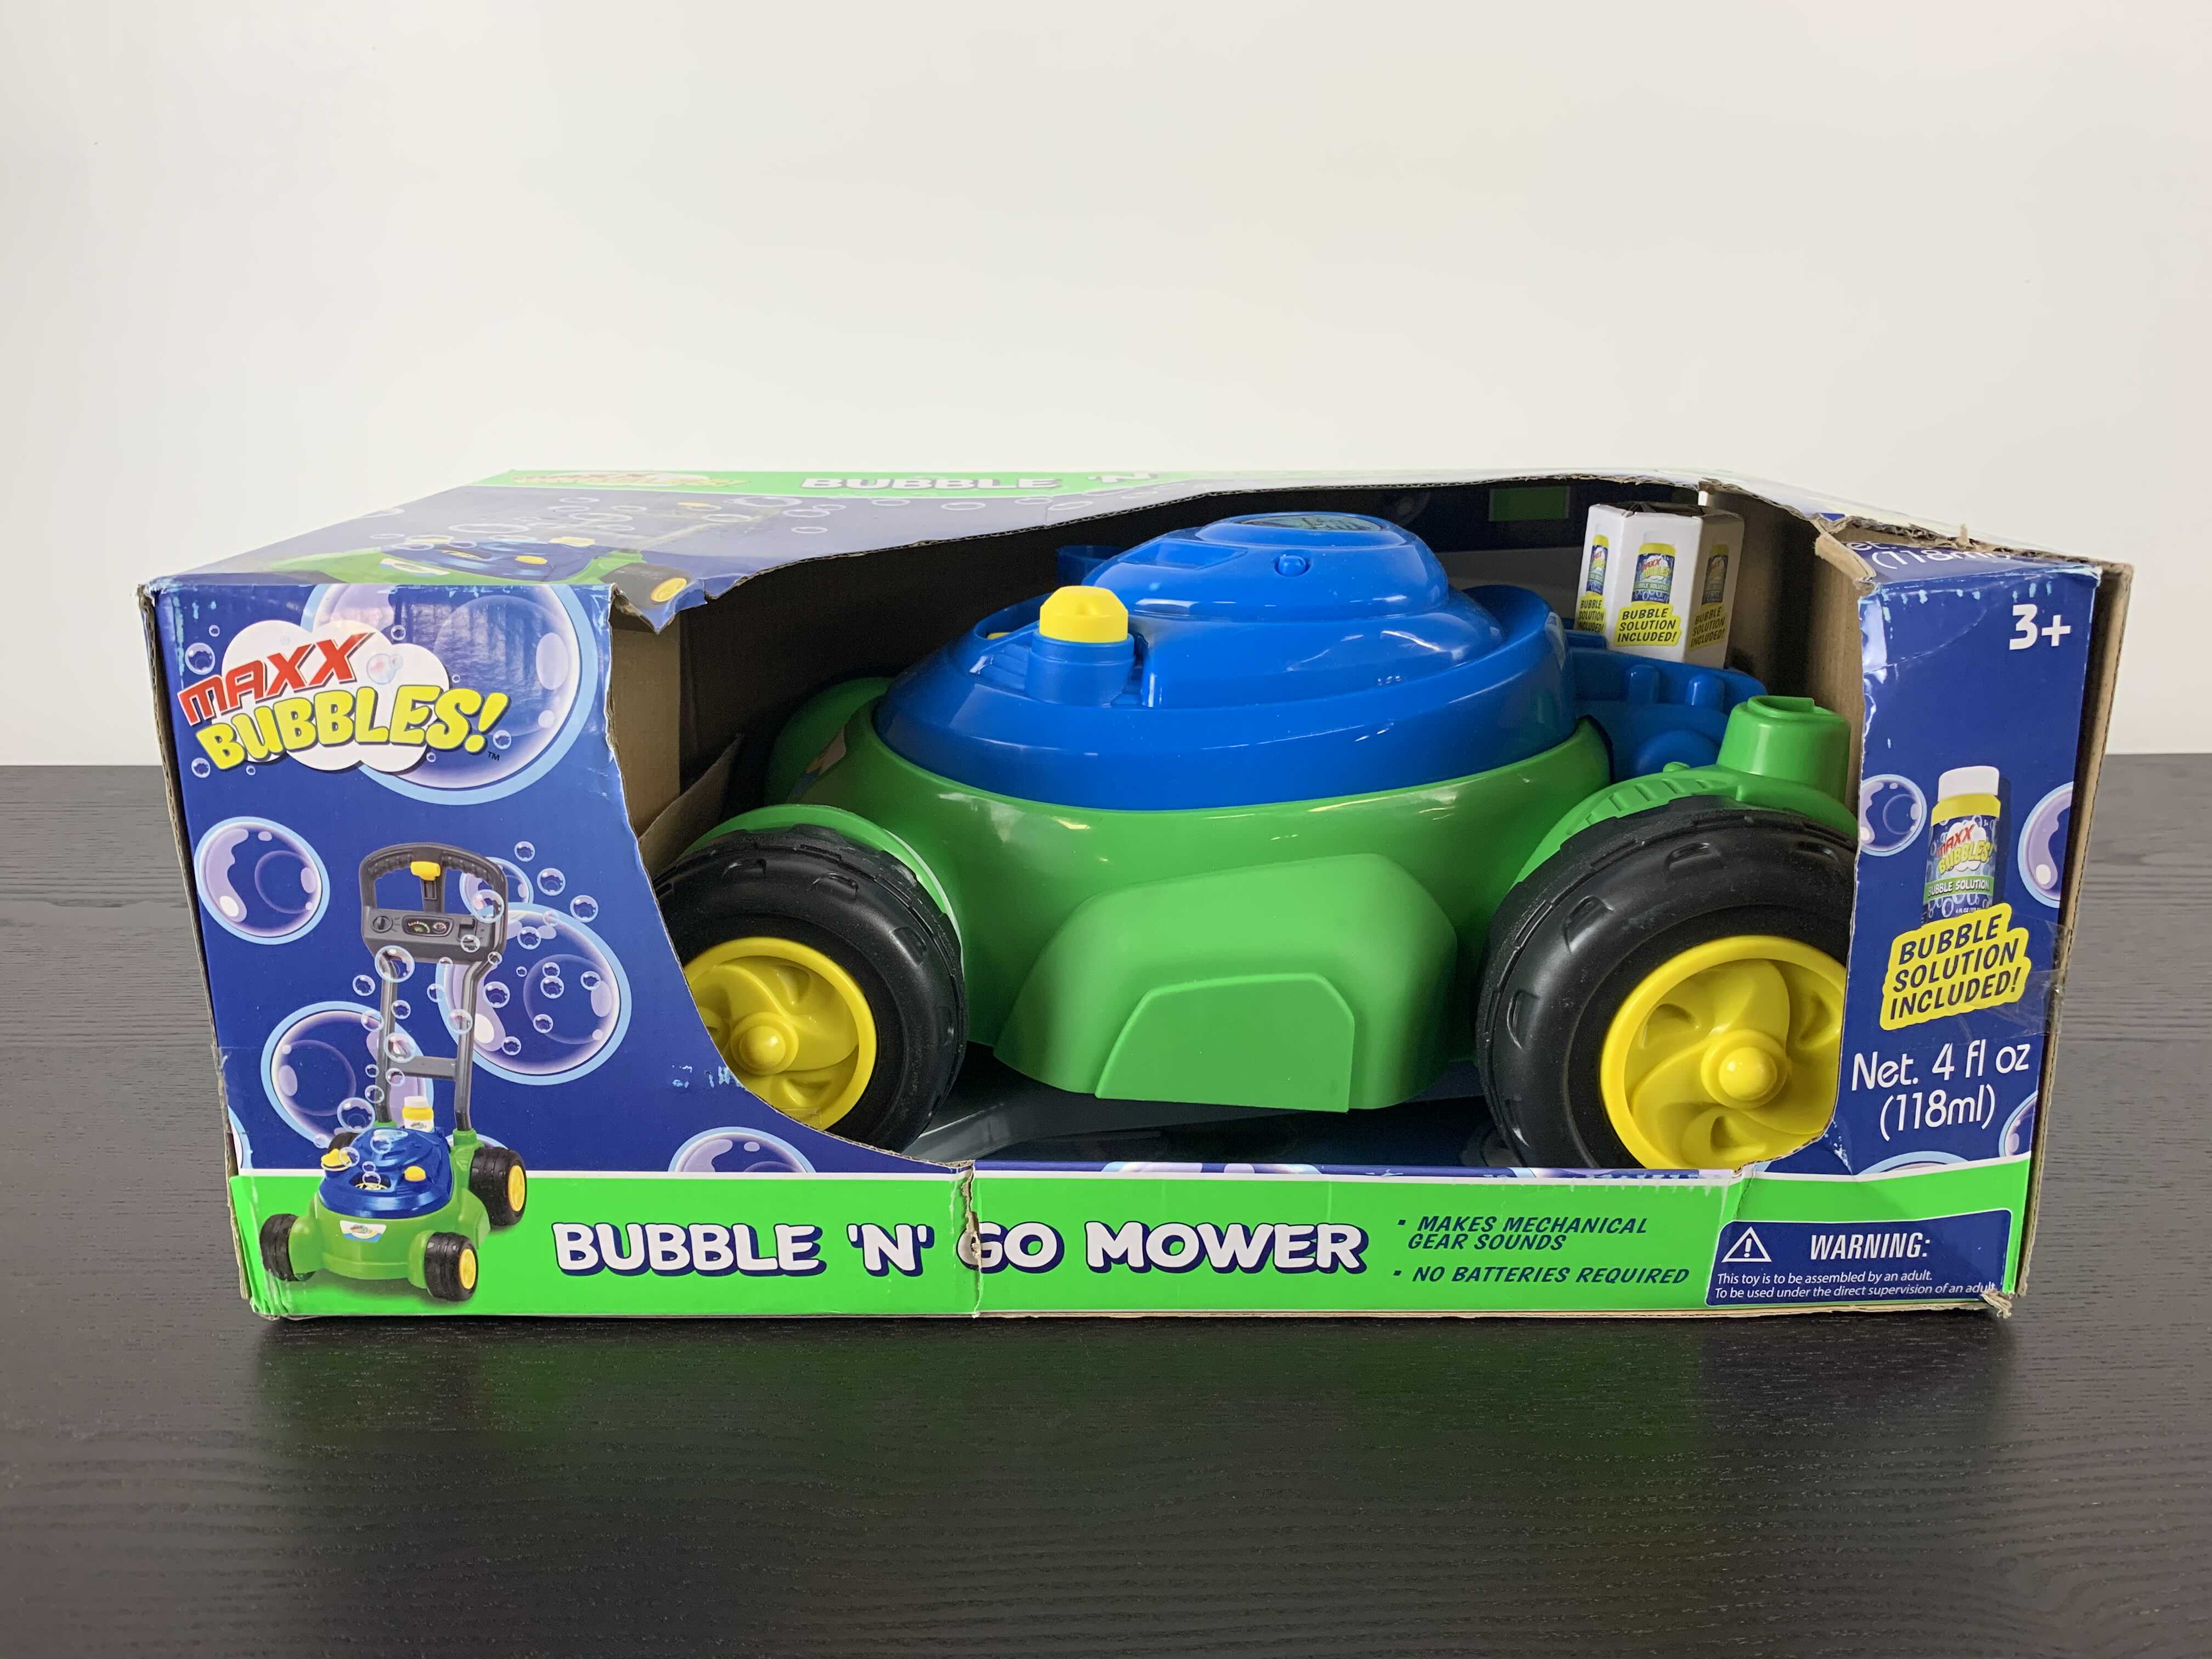 maxx bubbles lawn mower